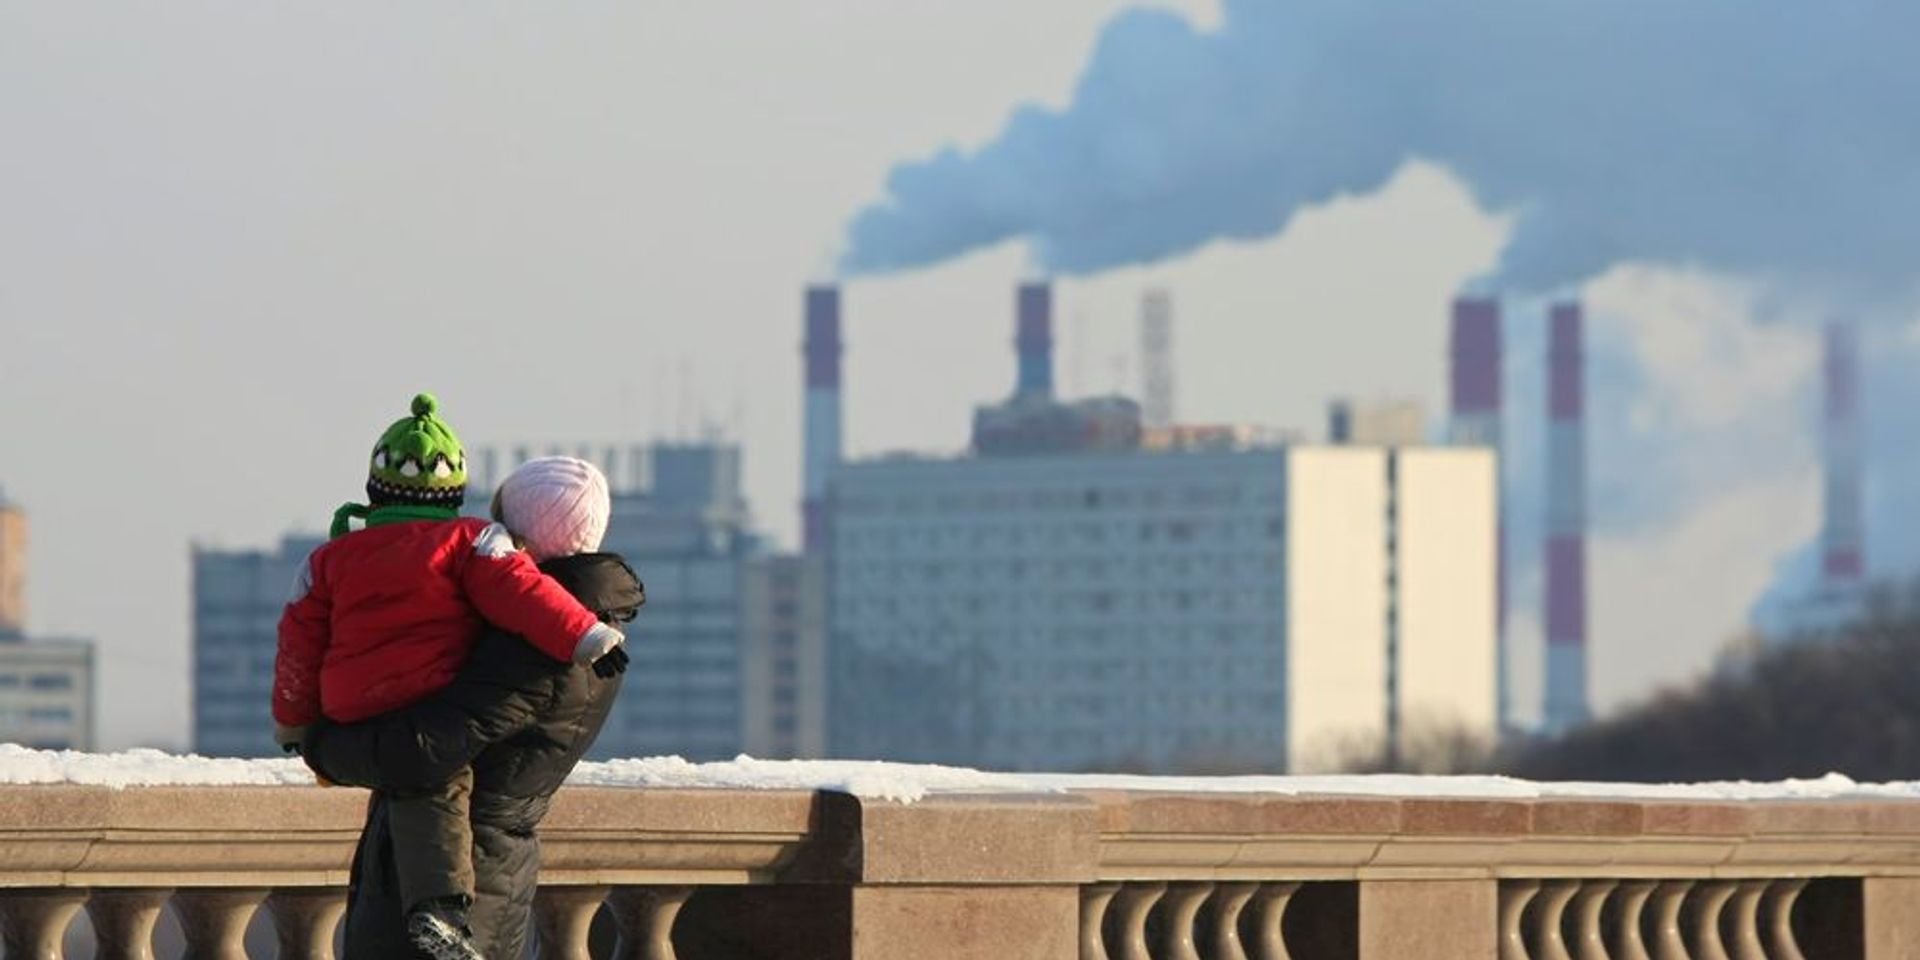 Károsan hat a kisgyerekek agyára a szennyezett levegő